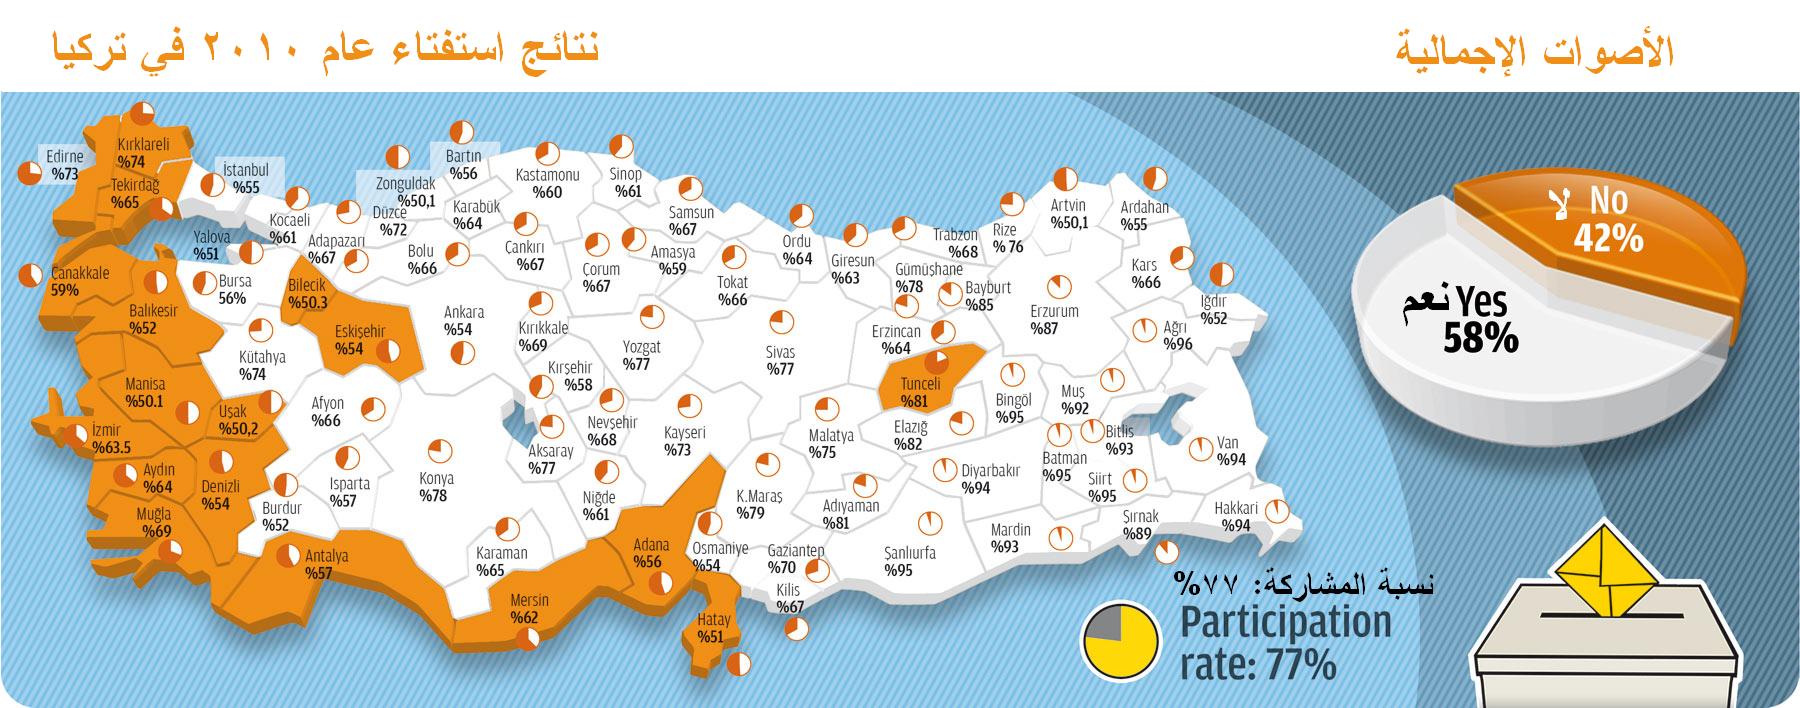 الخارطة الانتخابية لاستفتاء التعديلات الدستورية في تركيا